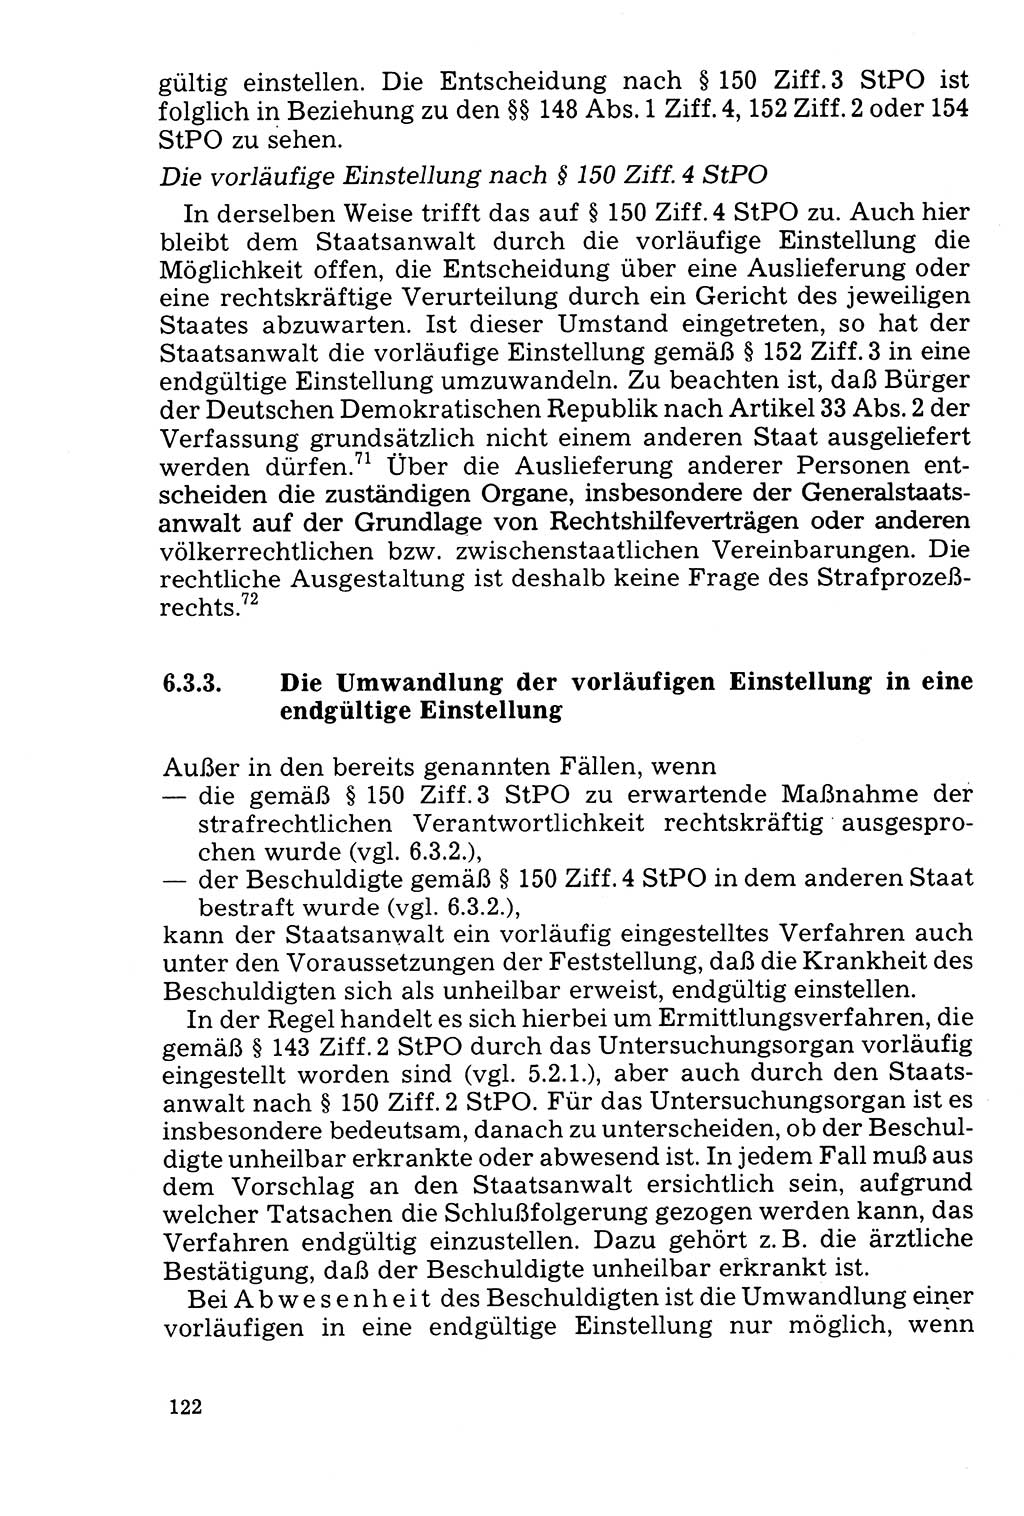 Der Abschluß des Ermittlungsverfahrens [Deutsche Demokratische Republik (DDR)] 1978, Seite 122 (Abschl. EV DDR 1978, S. 122)